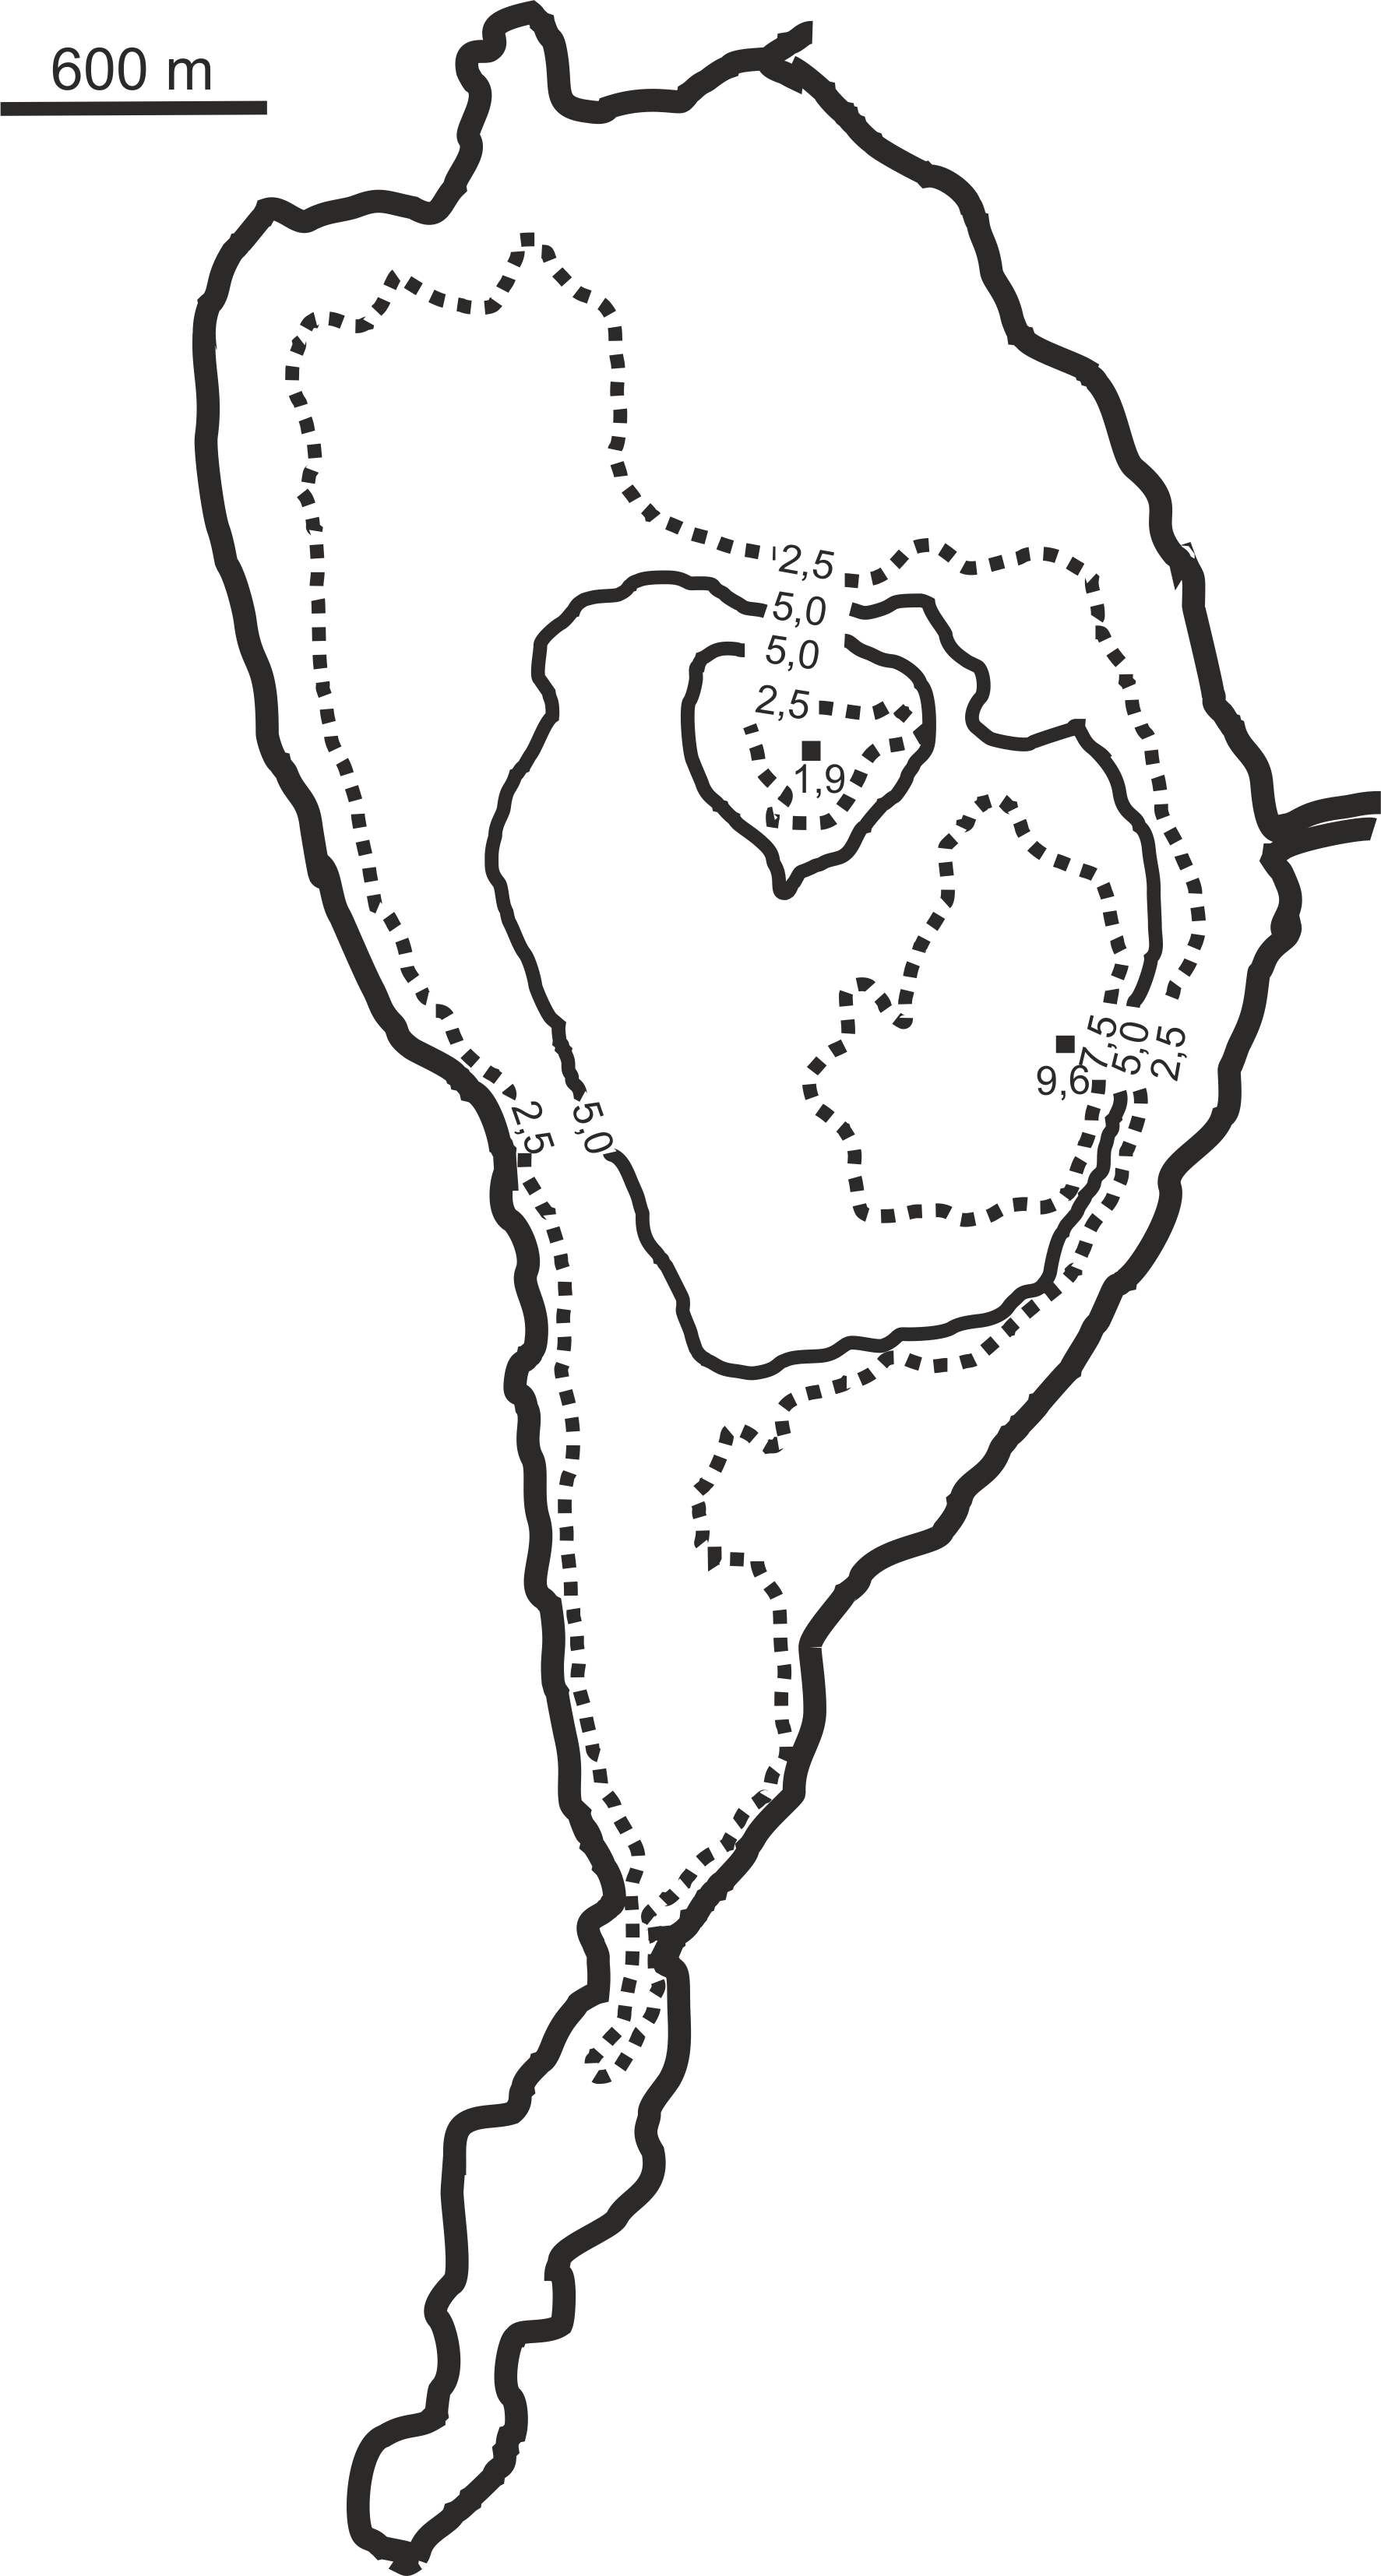 Mapa batymetryczna Jeziora Zbąszyńskiego (na podstawie dokumentacji limnometrycznej Instytutu Rybactwa Śródlądowego w Olsztynie).